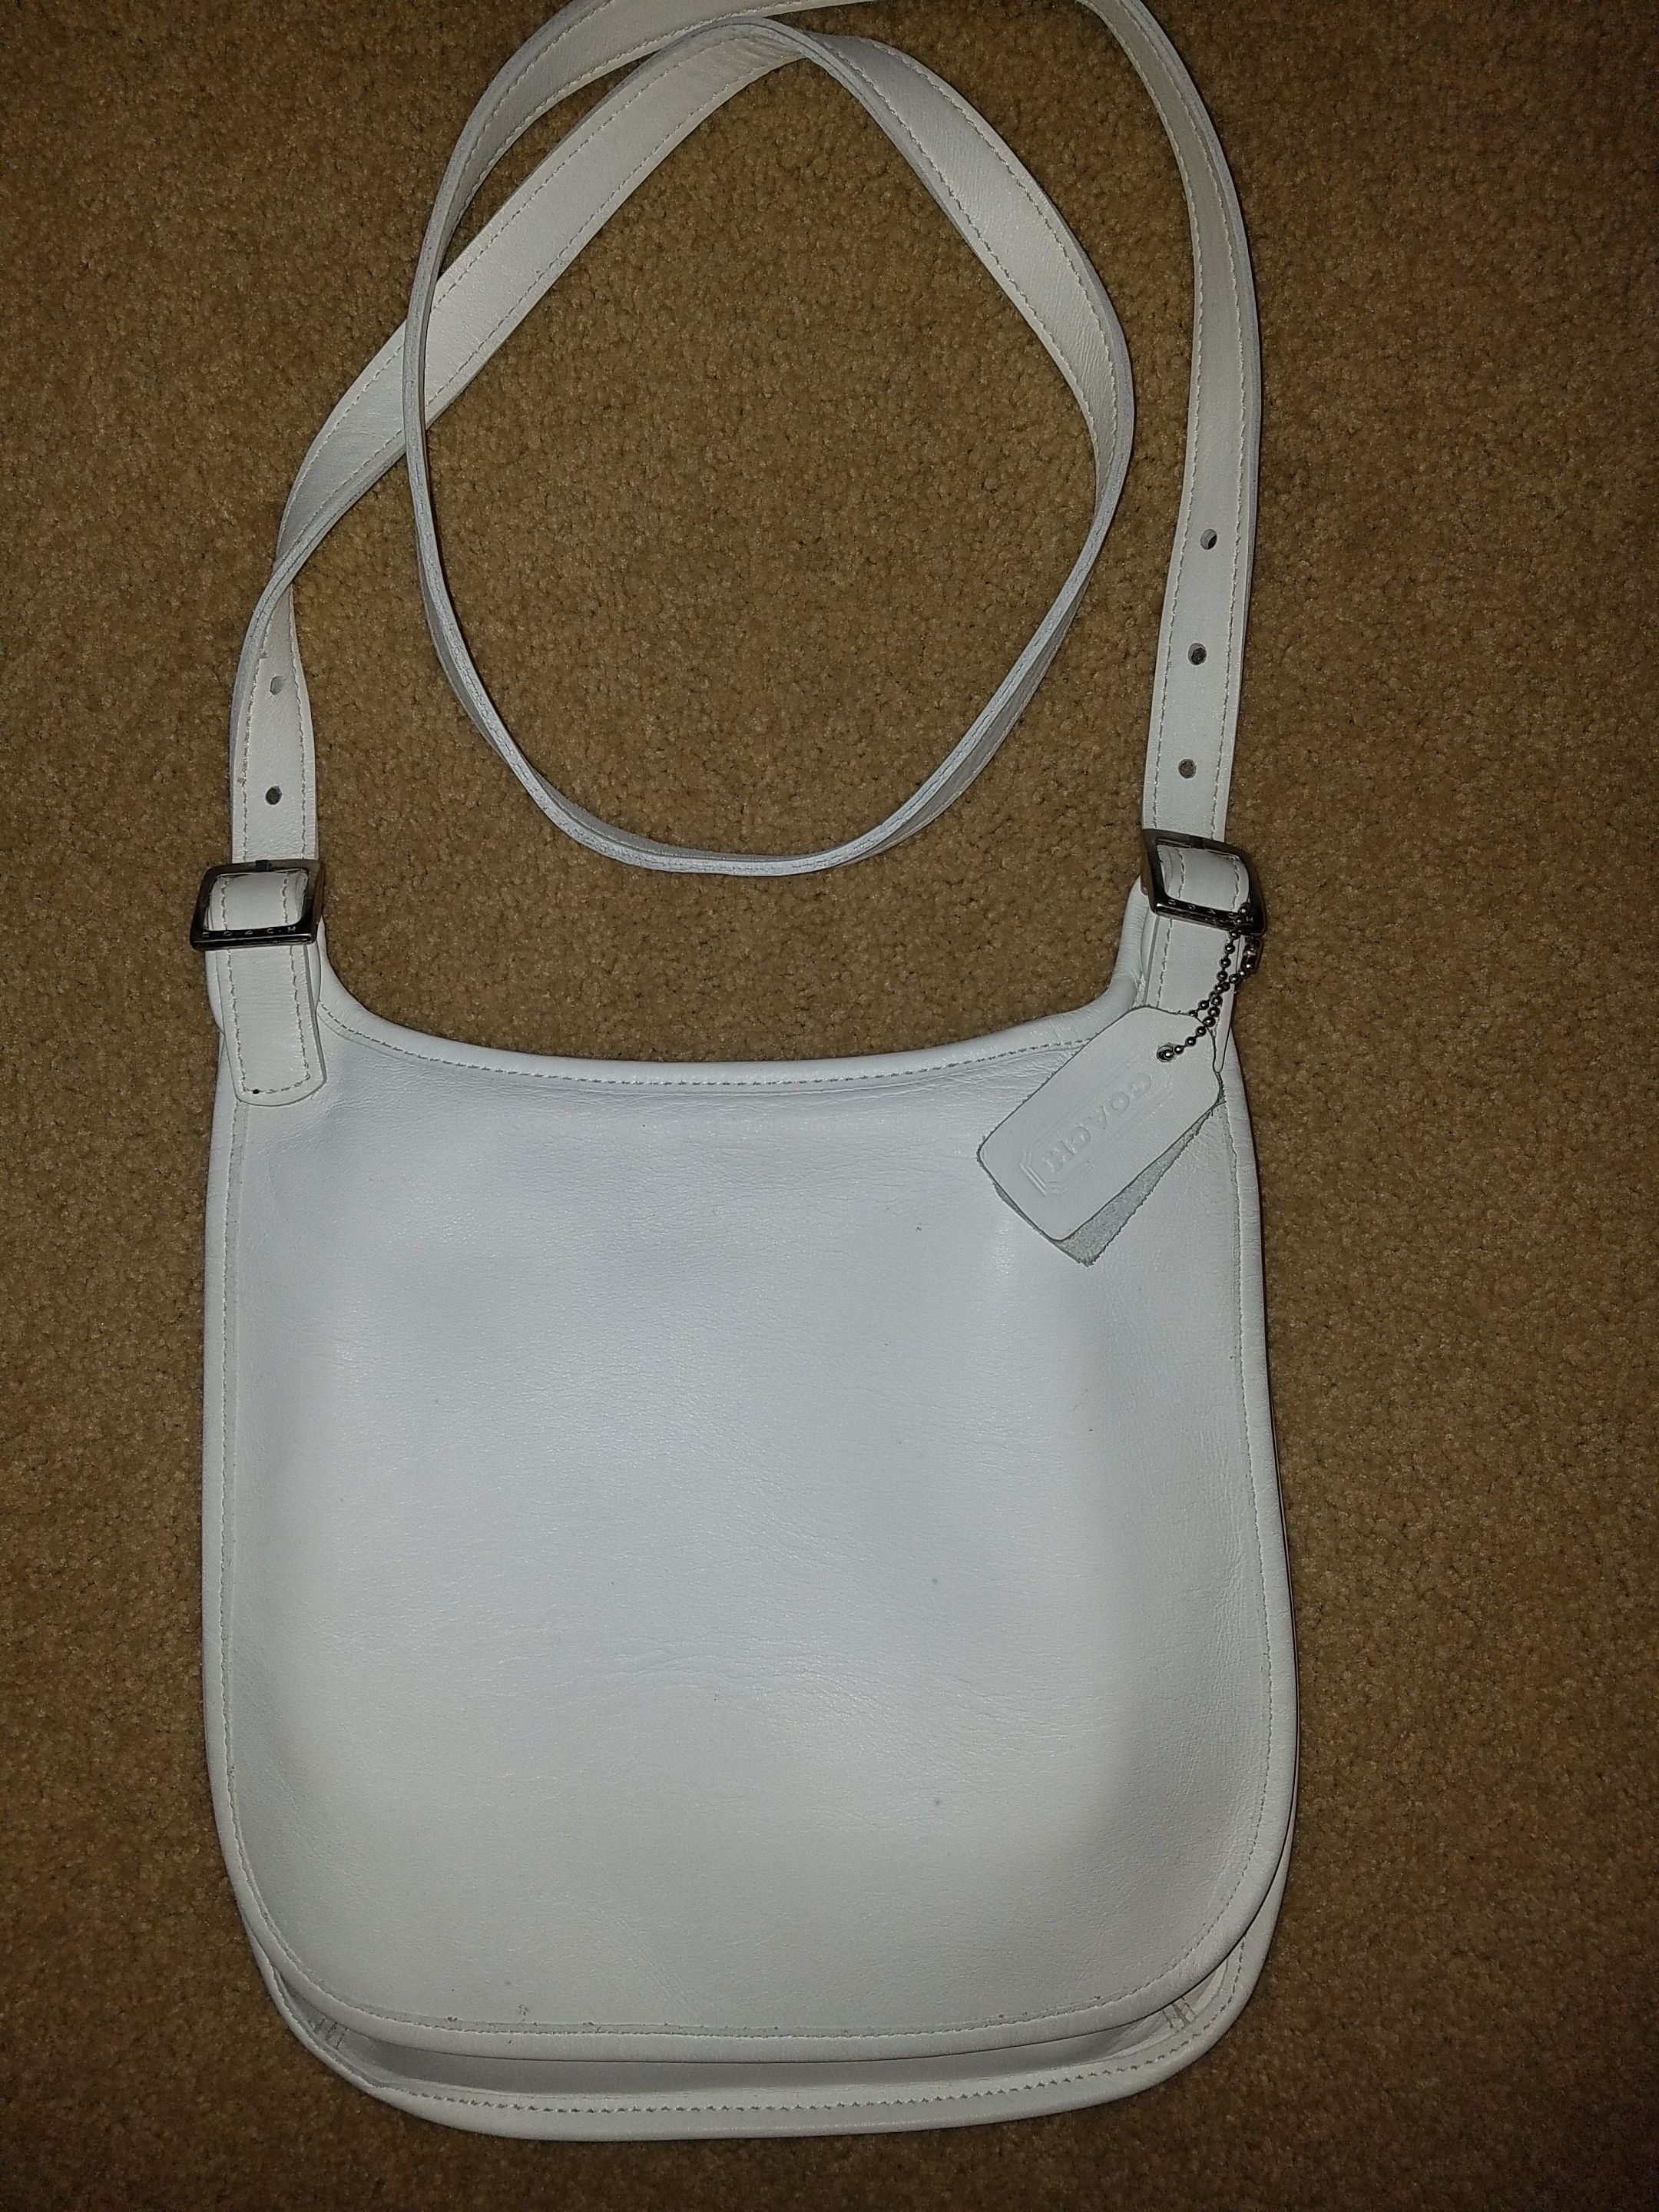 COACH ERGO Vintage White Leather HOBO SHOULDER BAG PURSE 9020